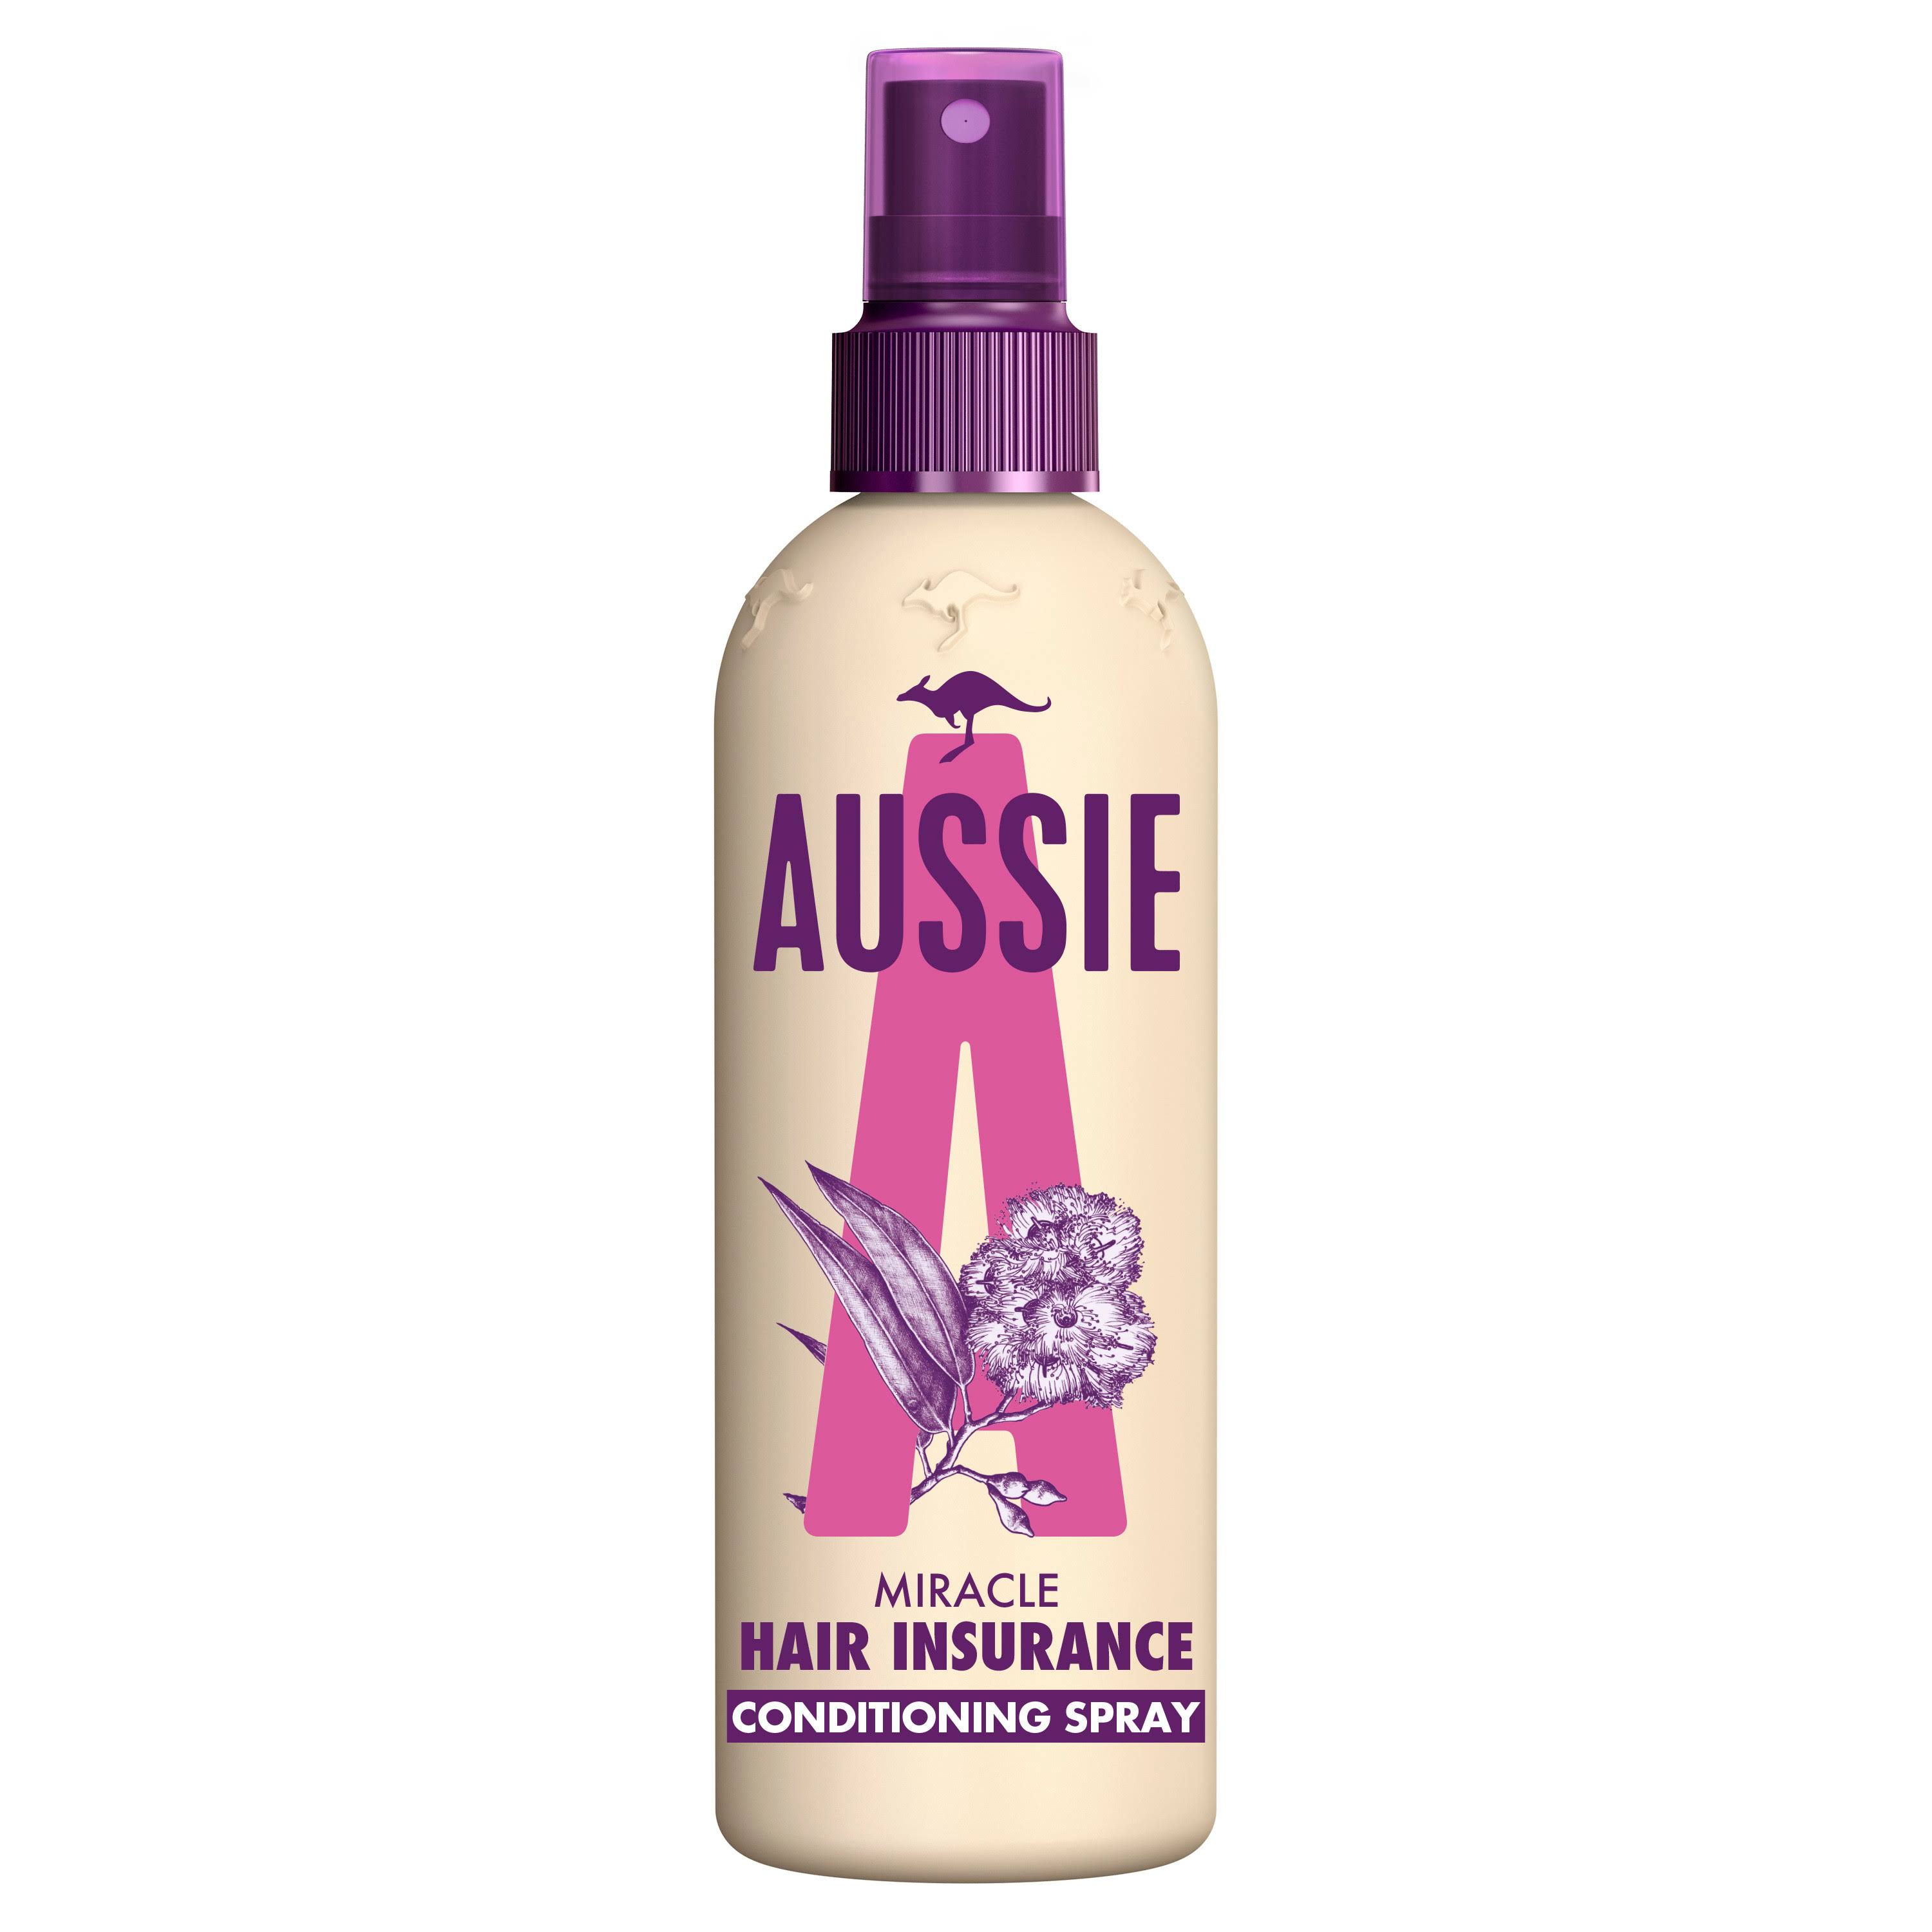 Aussie Hair Insurance Leave In Hair Conditioner Spray - 250ml